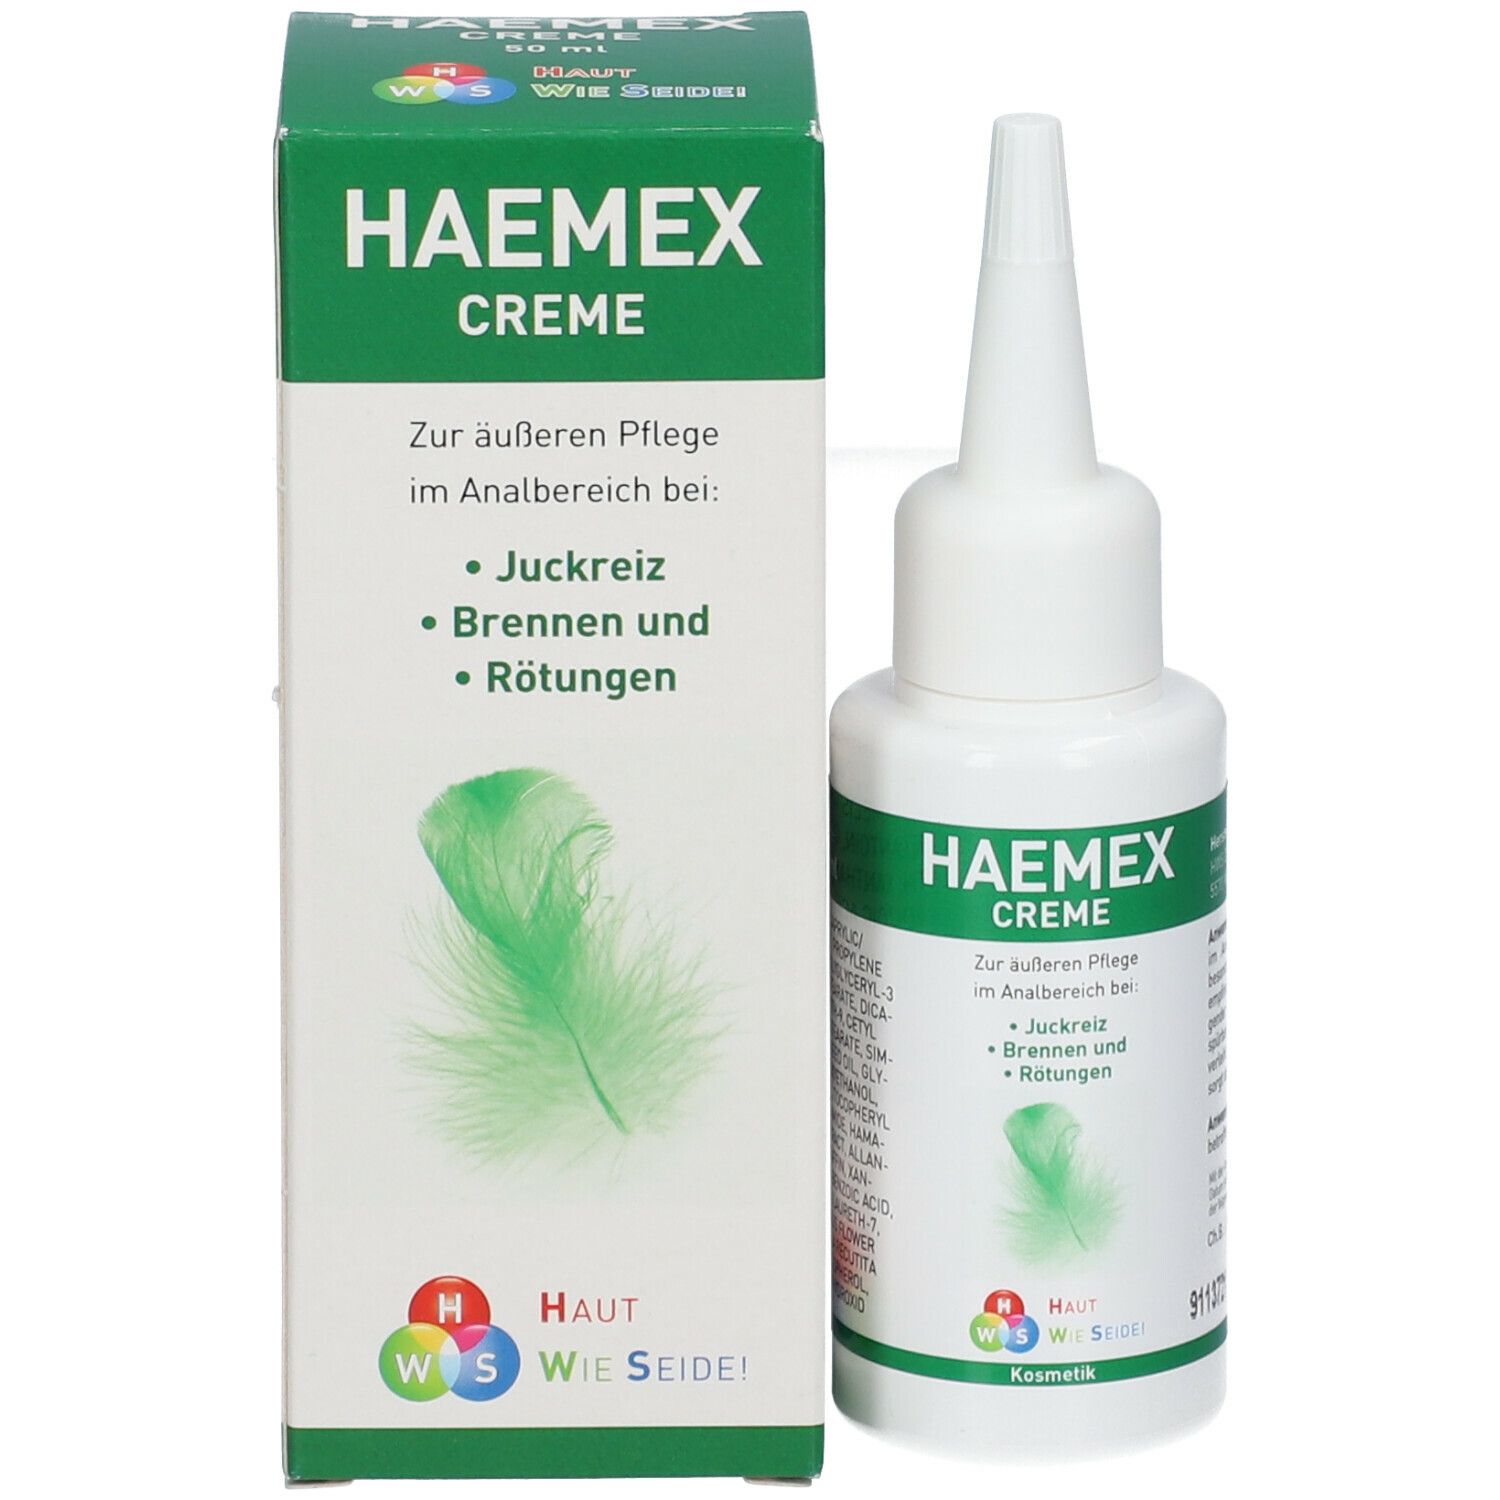 HAEMEX CREME